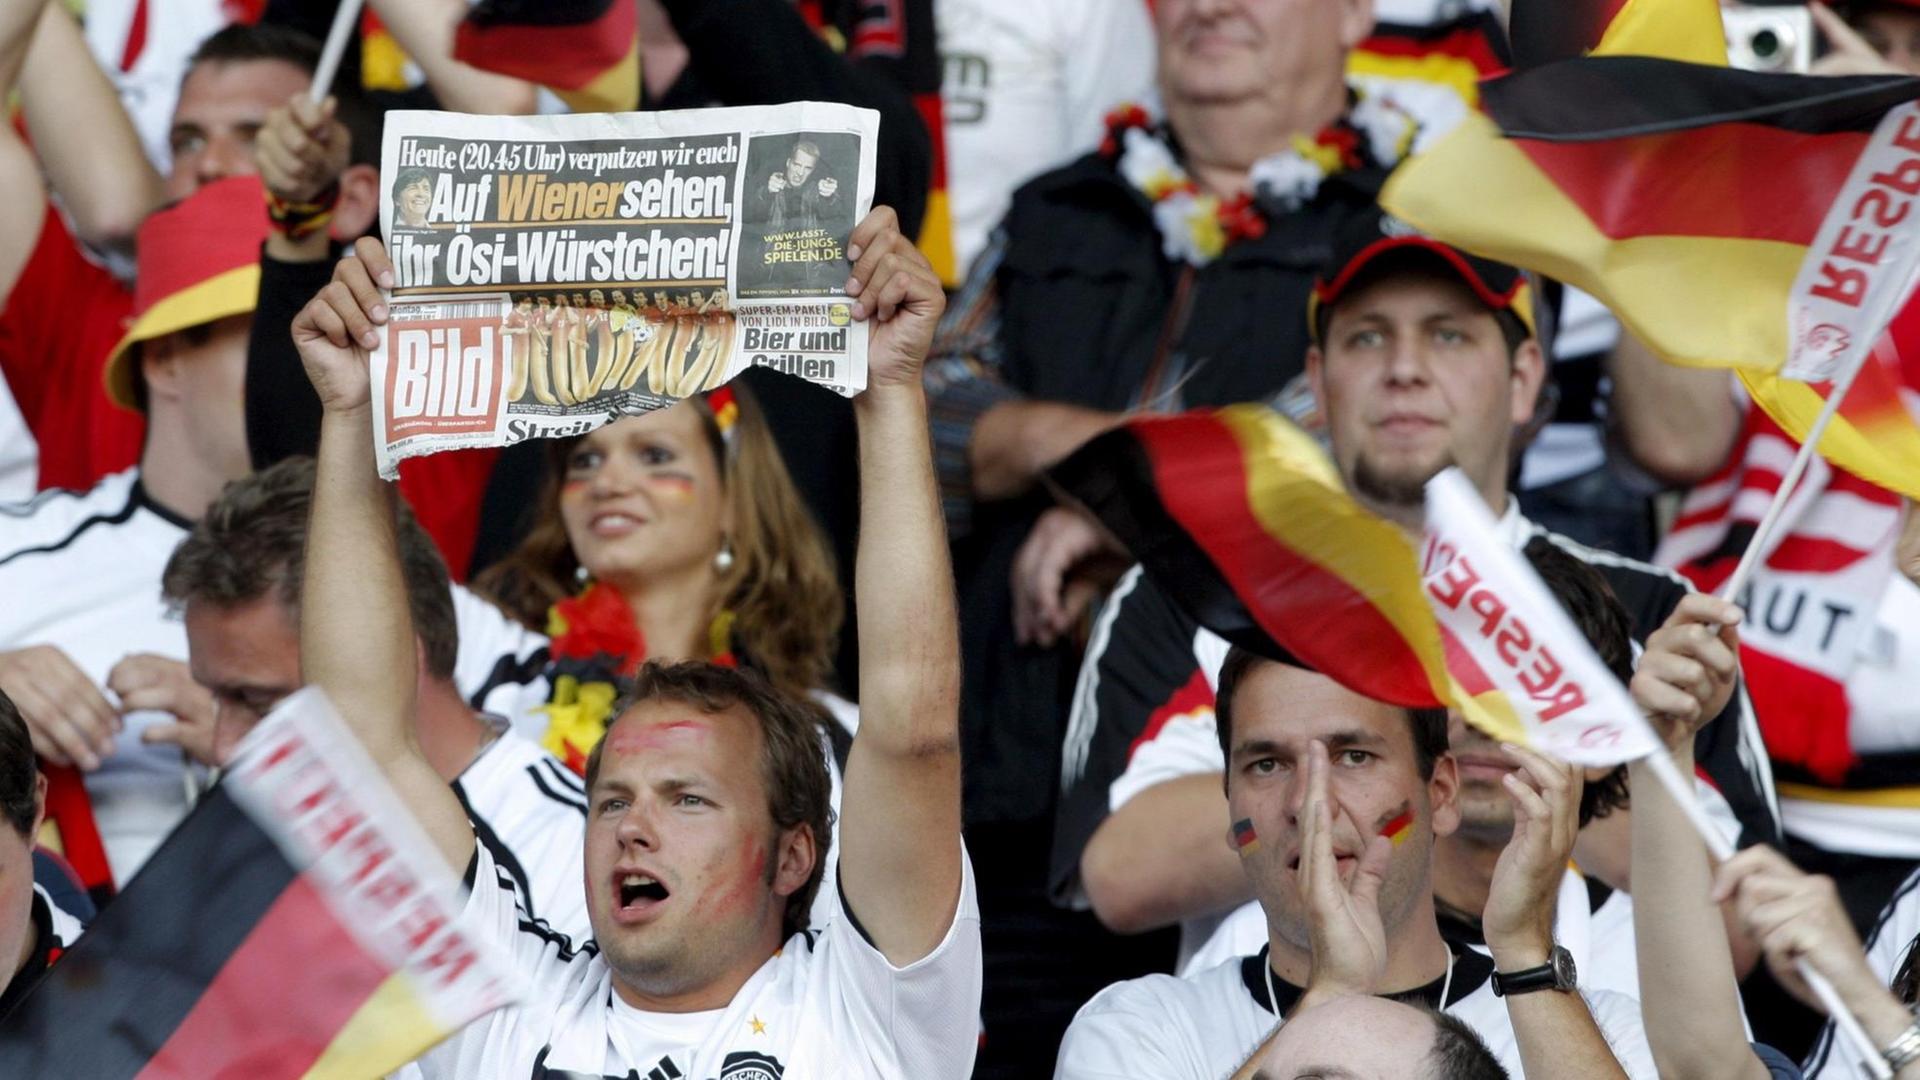 Ein Fan der Deutschen Nationalmannschaft hält die "Bild"-Zeitung vor Beginn des EM-Spiels 2008 Deutschland gegen Österreich im Ernst Happel Stadion in Wien hoch.